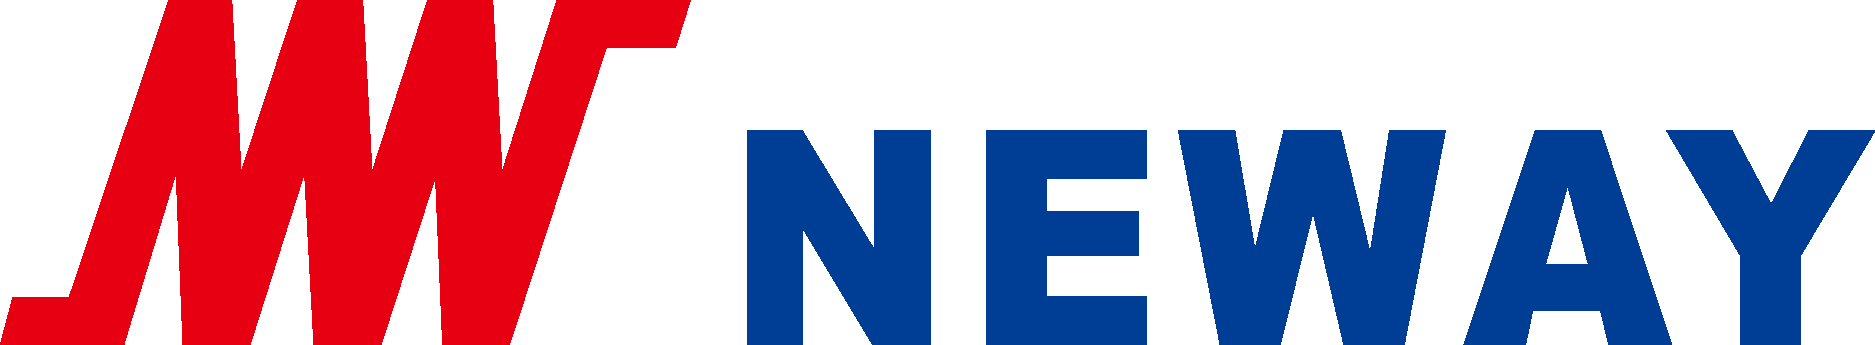 Neway Valve Logo Vector